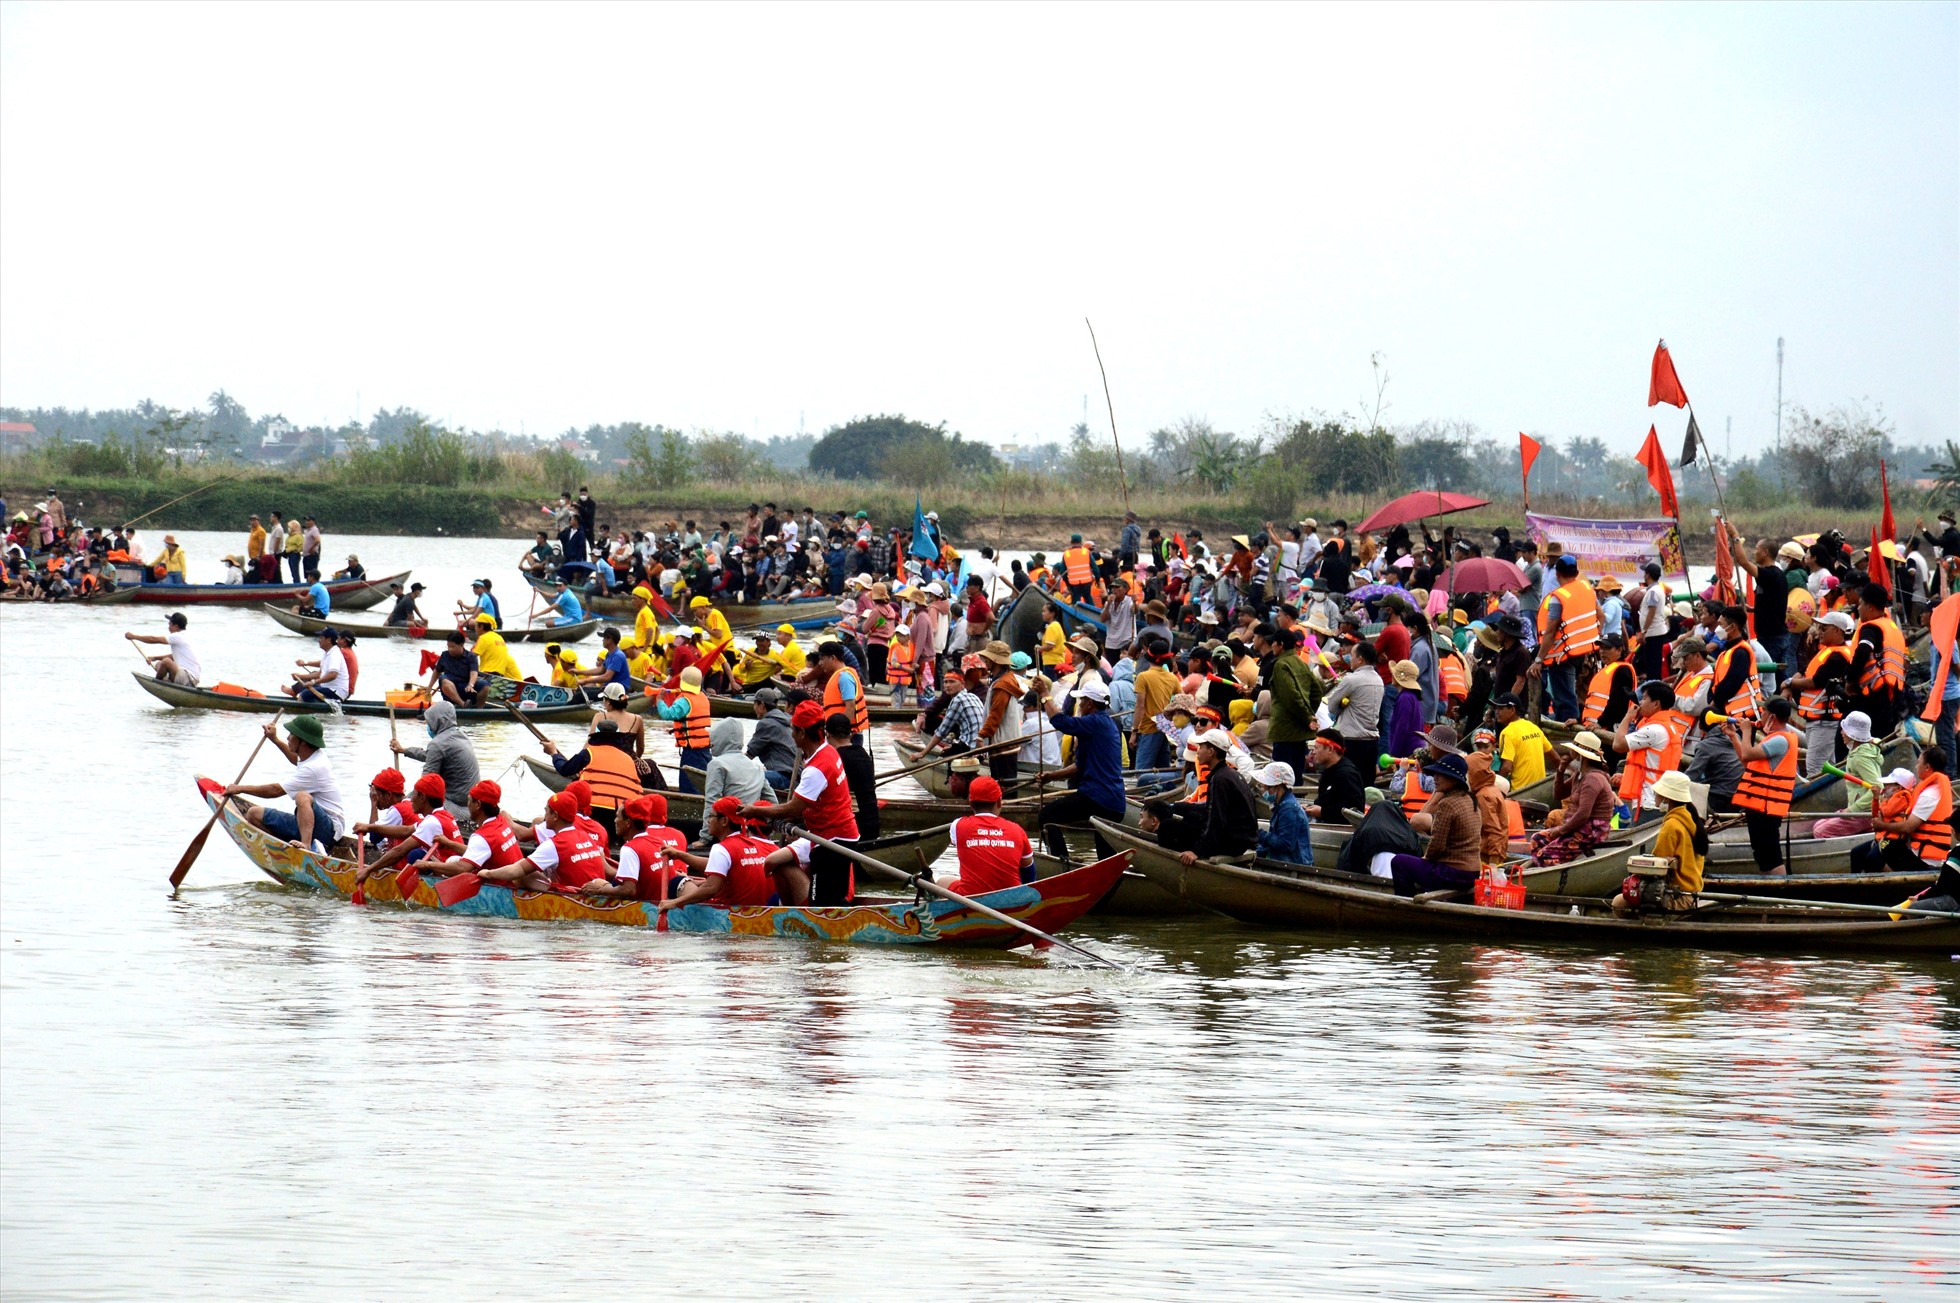 Lễ hội đua thuyền trên sông Trà Khúc thu hút đông đảo người dân và du khách đến xem. Thay vì đứng trên bờ, họ nhiệt tình chèo ghe ra giữa sông để cổ vũ cho các đội đua. Ảnh: Ngọc Viên